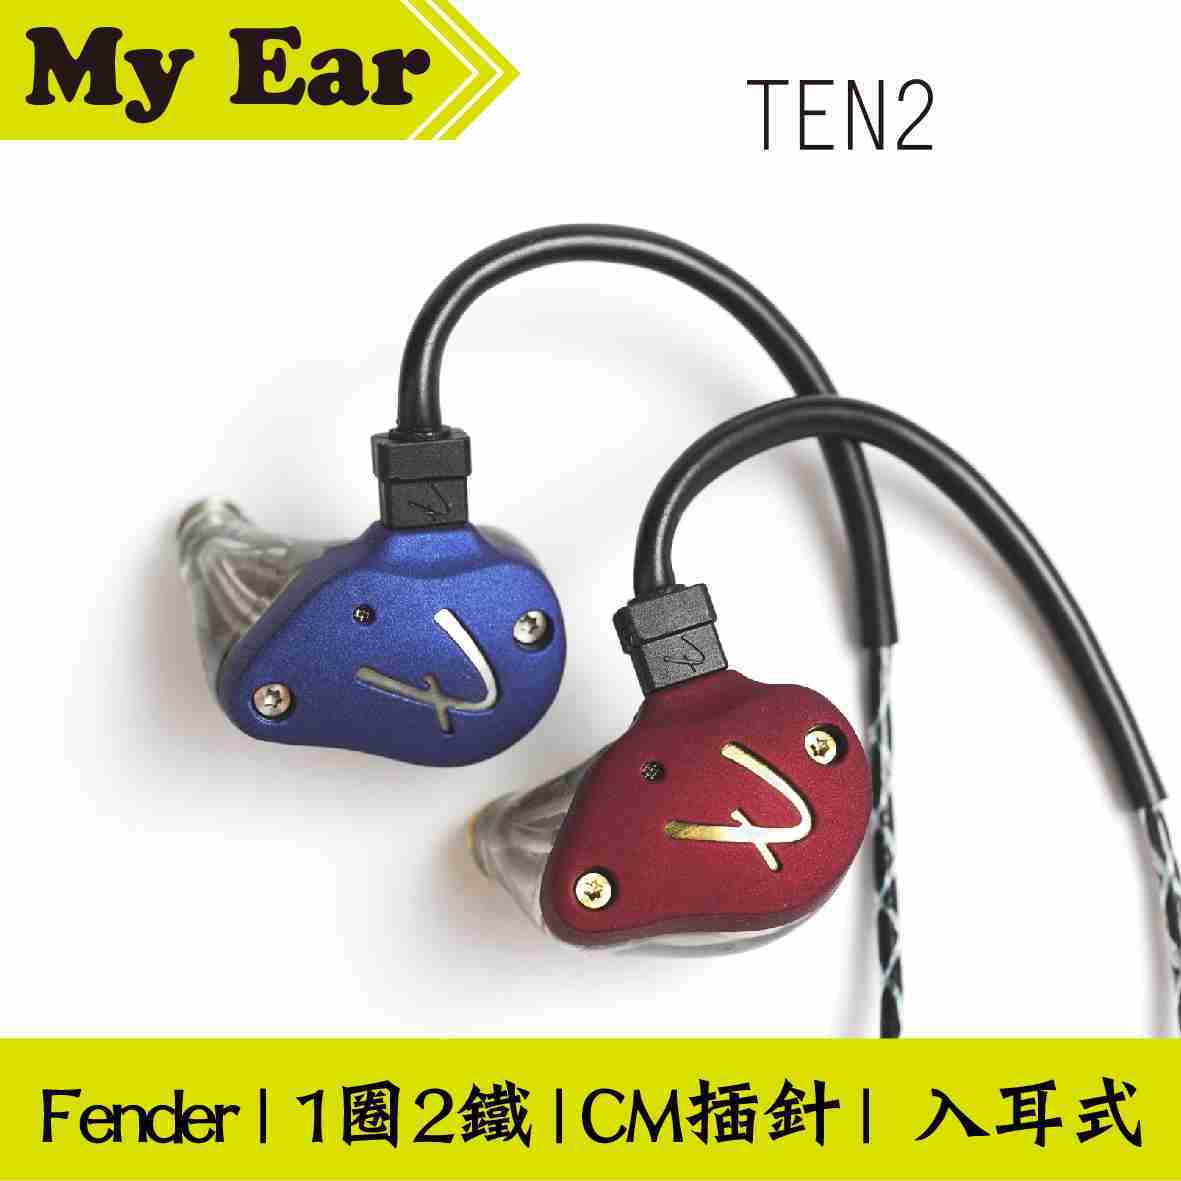 Fender TEN 2 鋼鐵紅 1圈2鐵 混合 監聽 入耳式 進階 耳機 | My Ear 耳機專門店